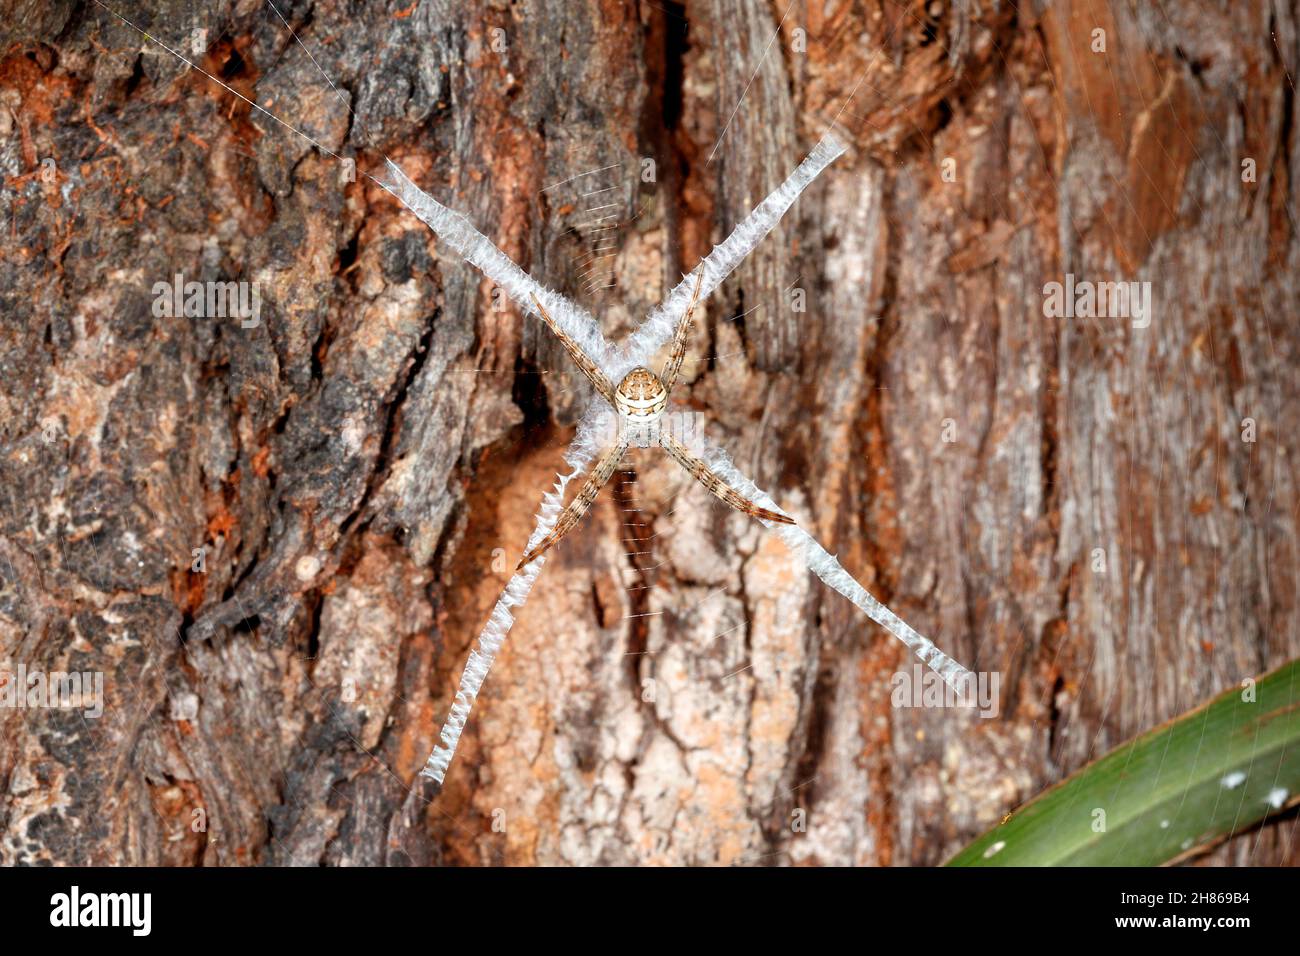 St Andrews Cross Spider, Argiope keyserlingi, ist eine Orb-Weberspinne aus Australien. Weiblich, zeigt das Kreuz stabilimentum in ihrem Netz. Stockfoto